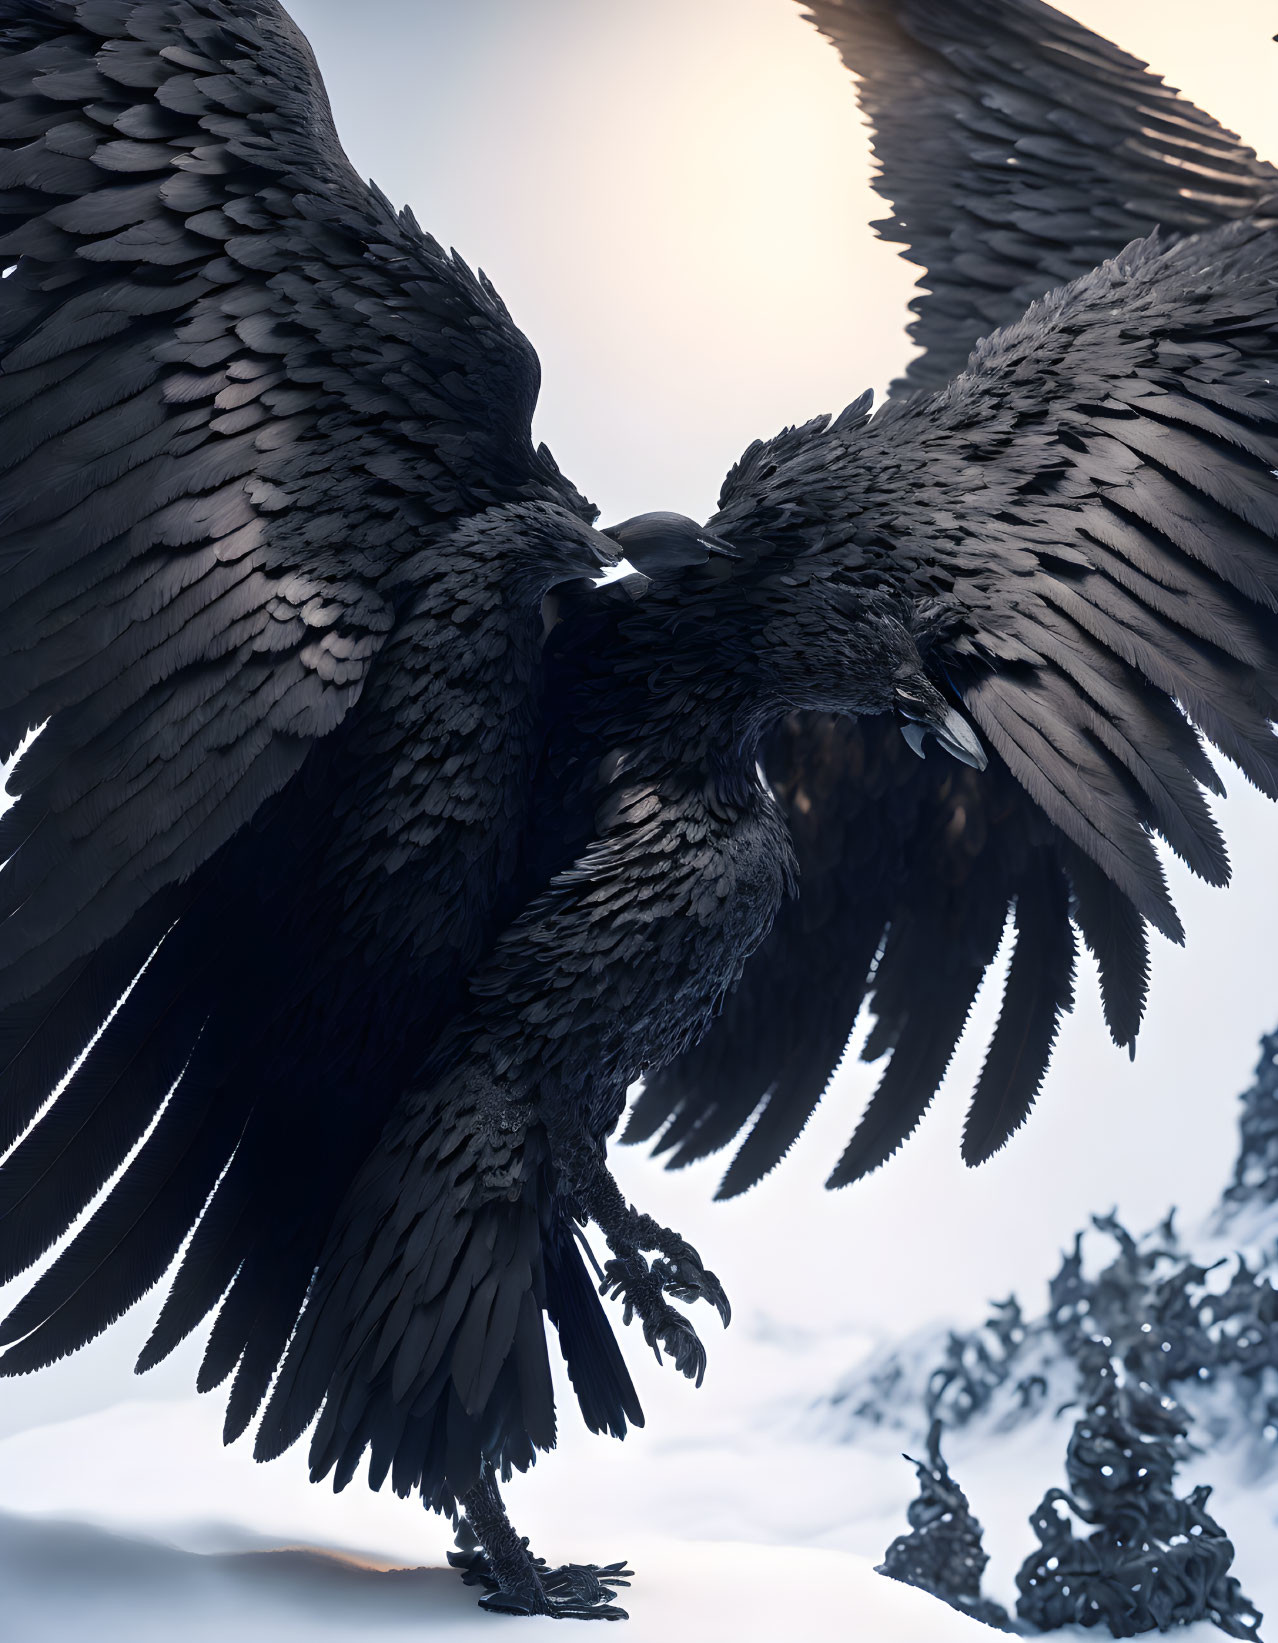 Majestic black bird with wings spread in snowy landscape